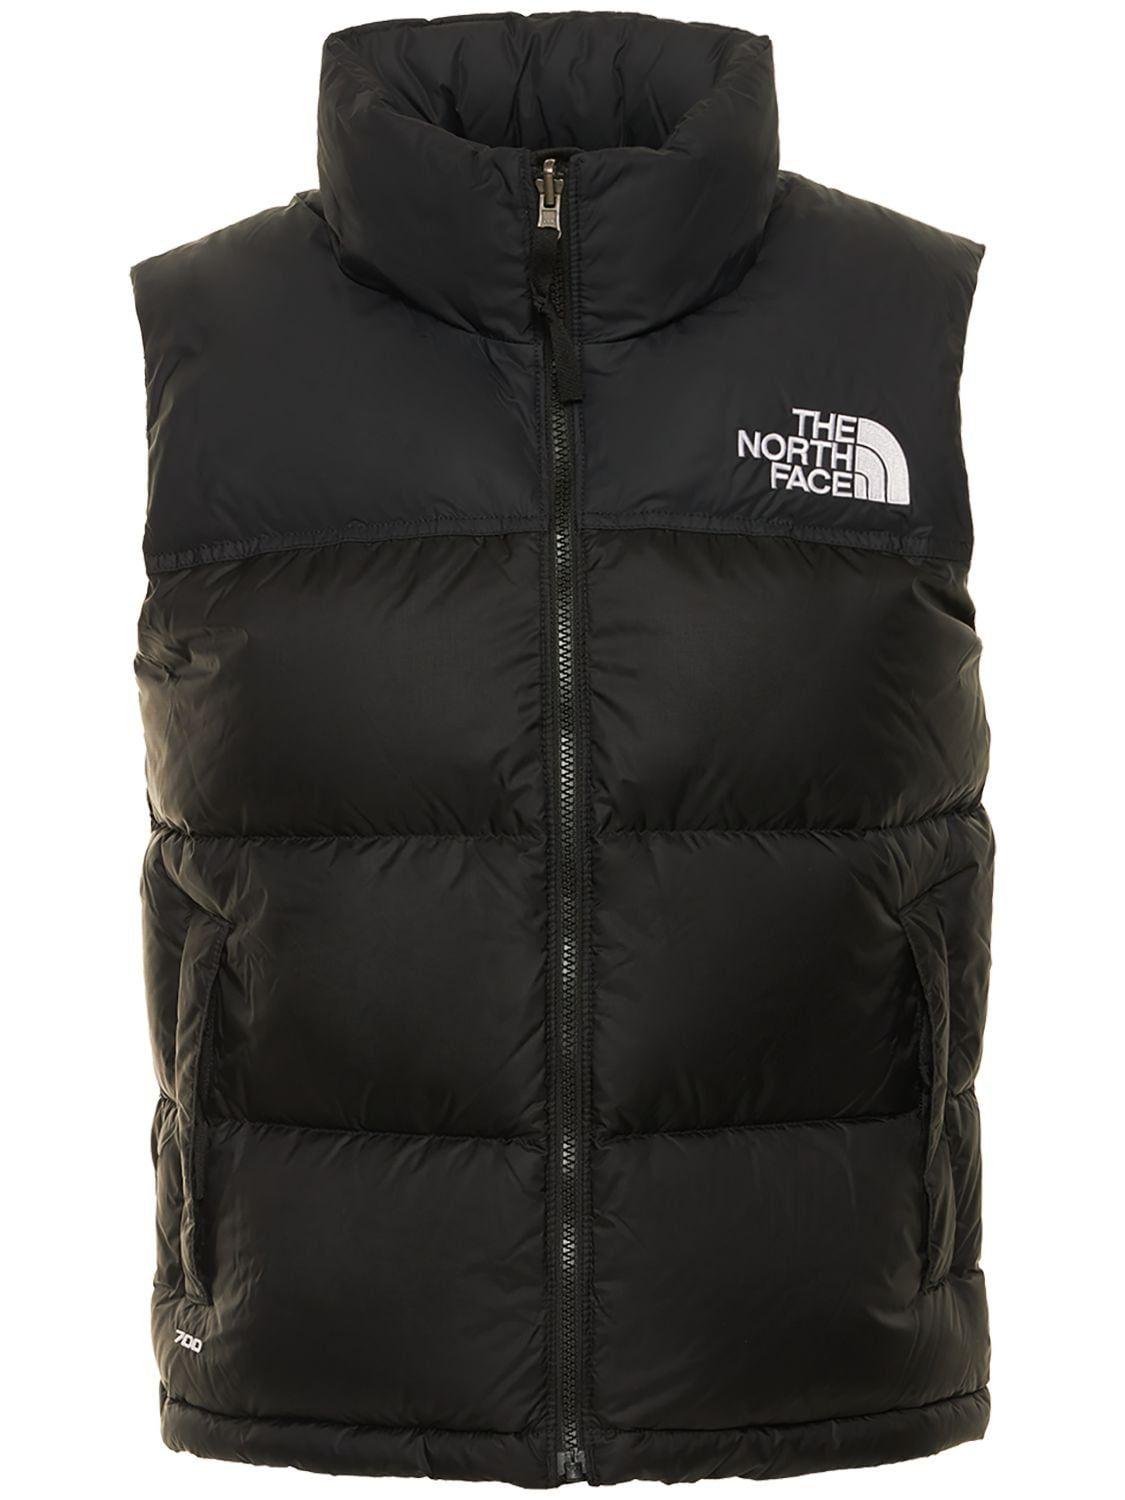 The North Face 1996 Retro Nuptse Nylon Down Vest in Black | Lyst